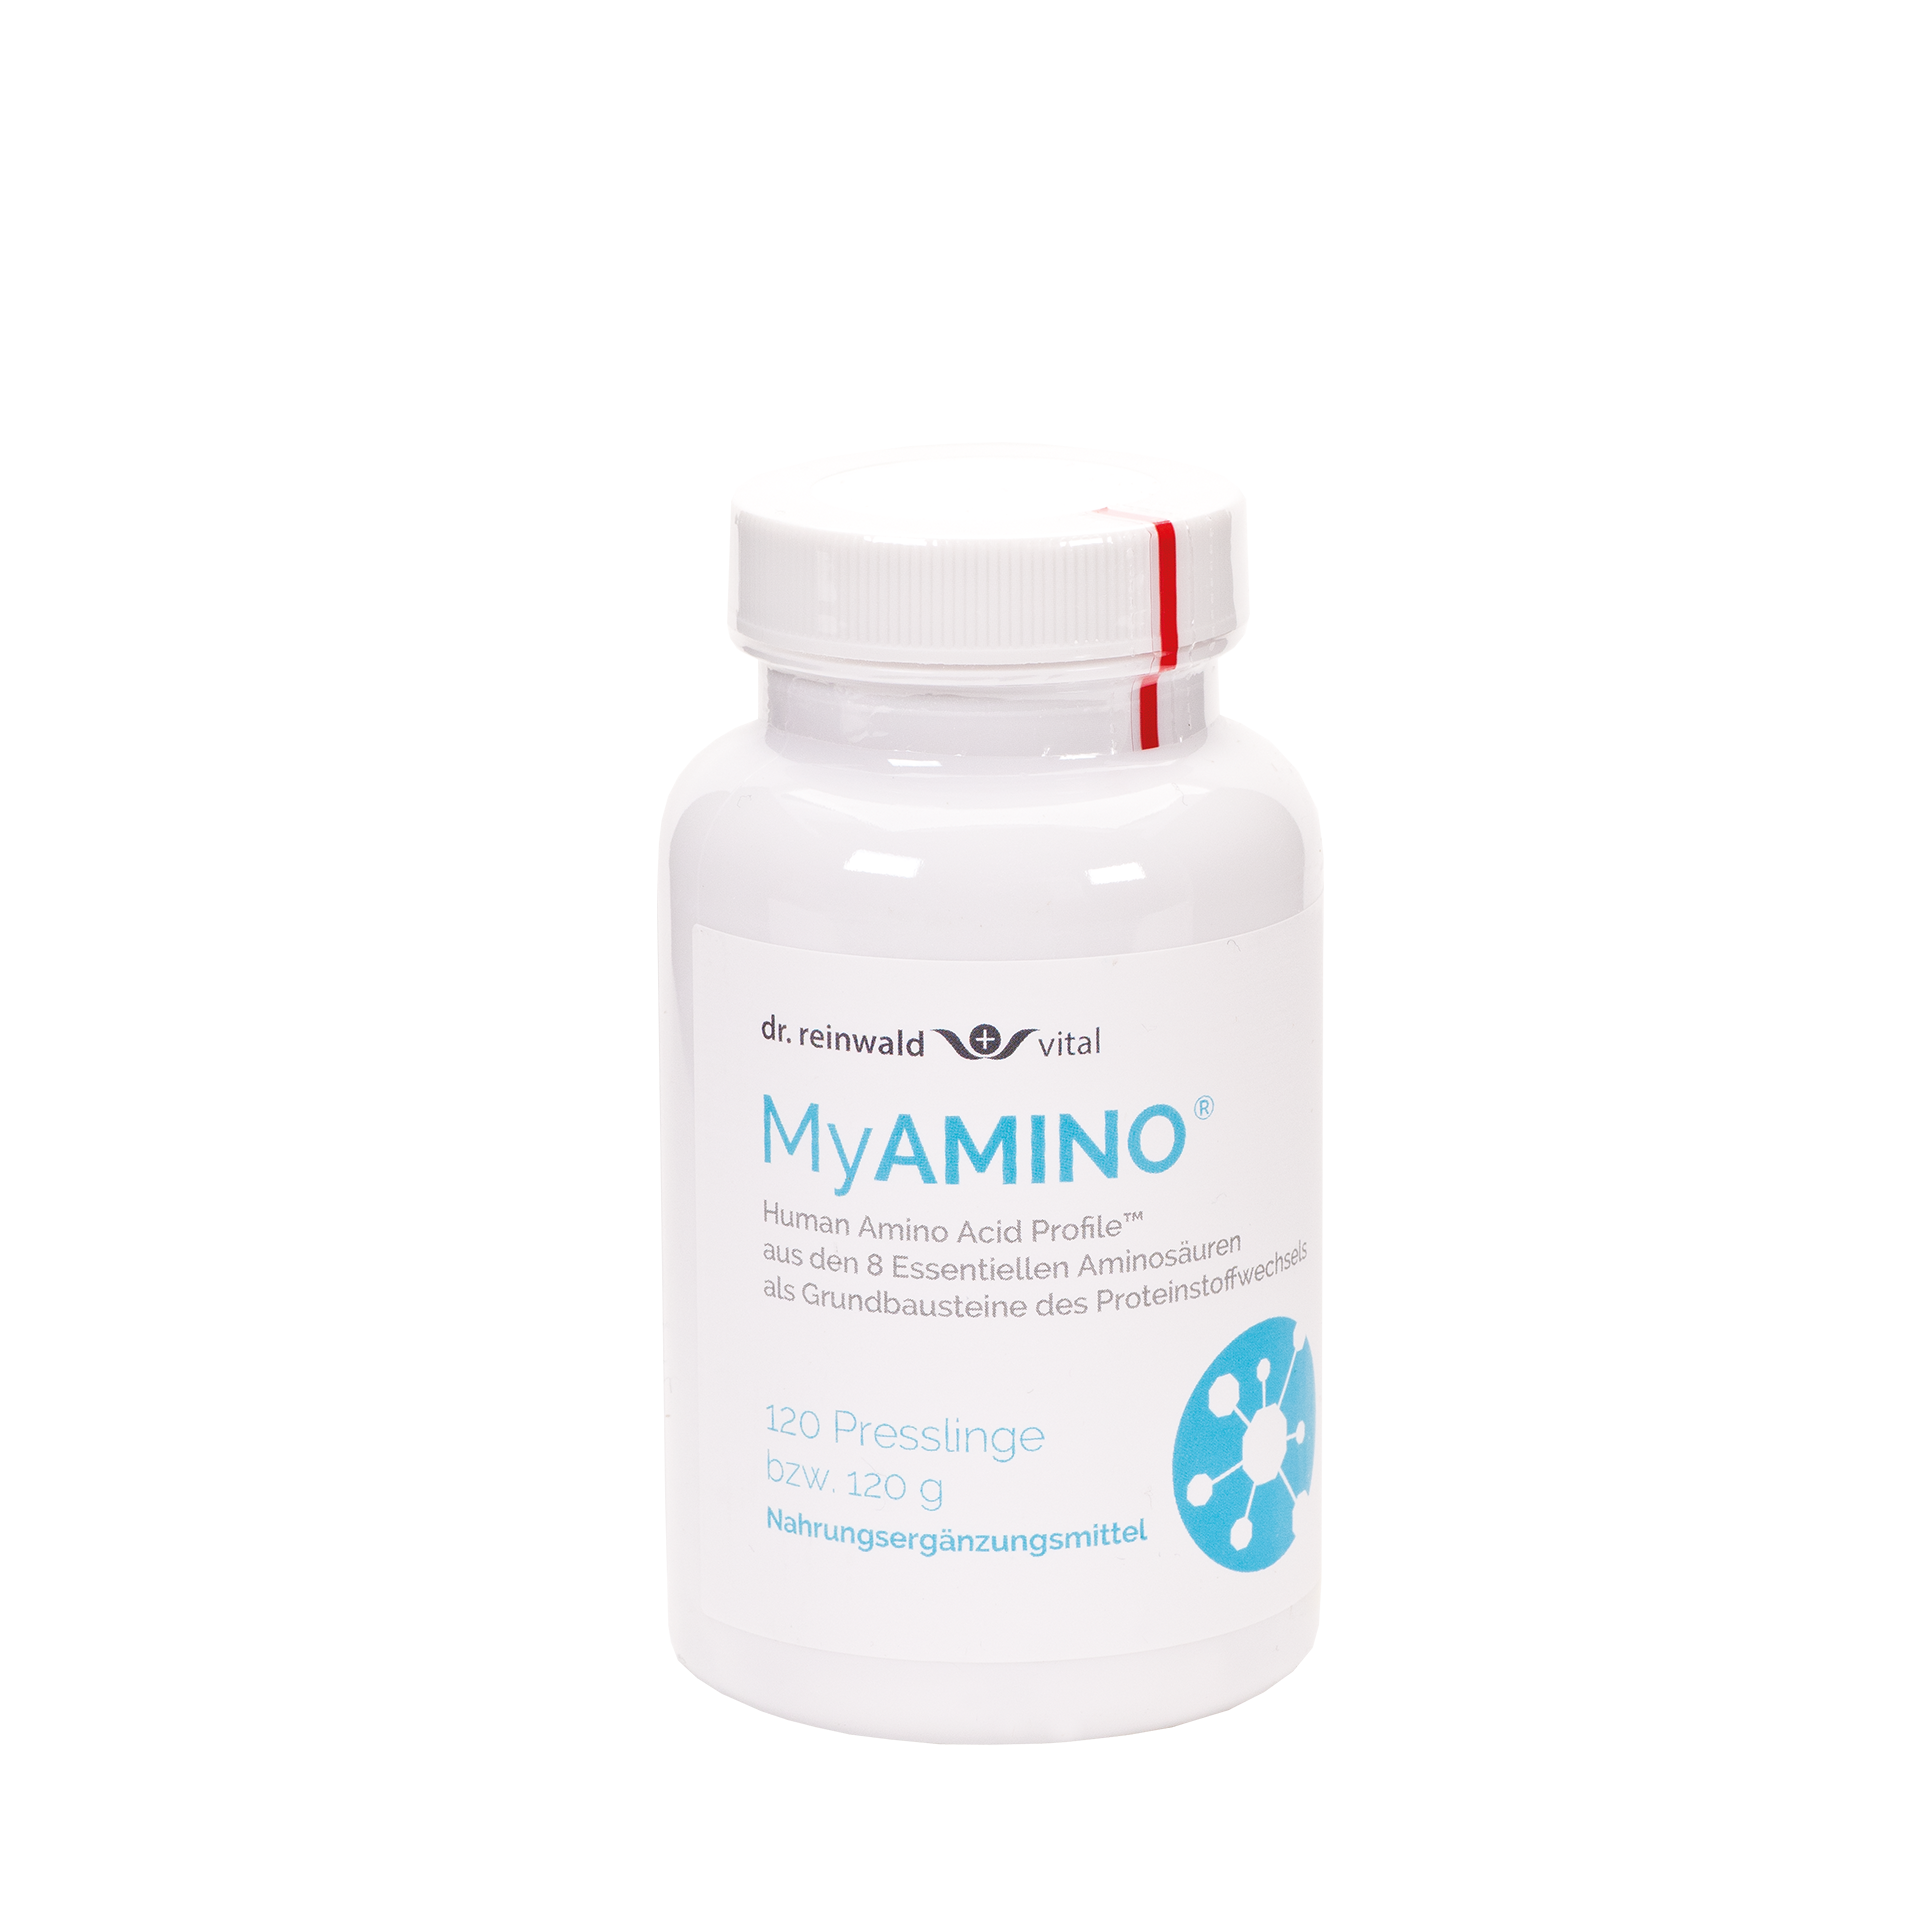 MyAMINO (MAP Aminosäuren), 120 Presslinge